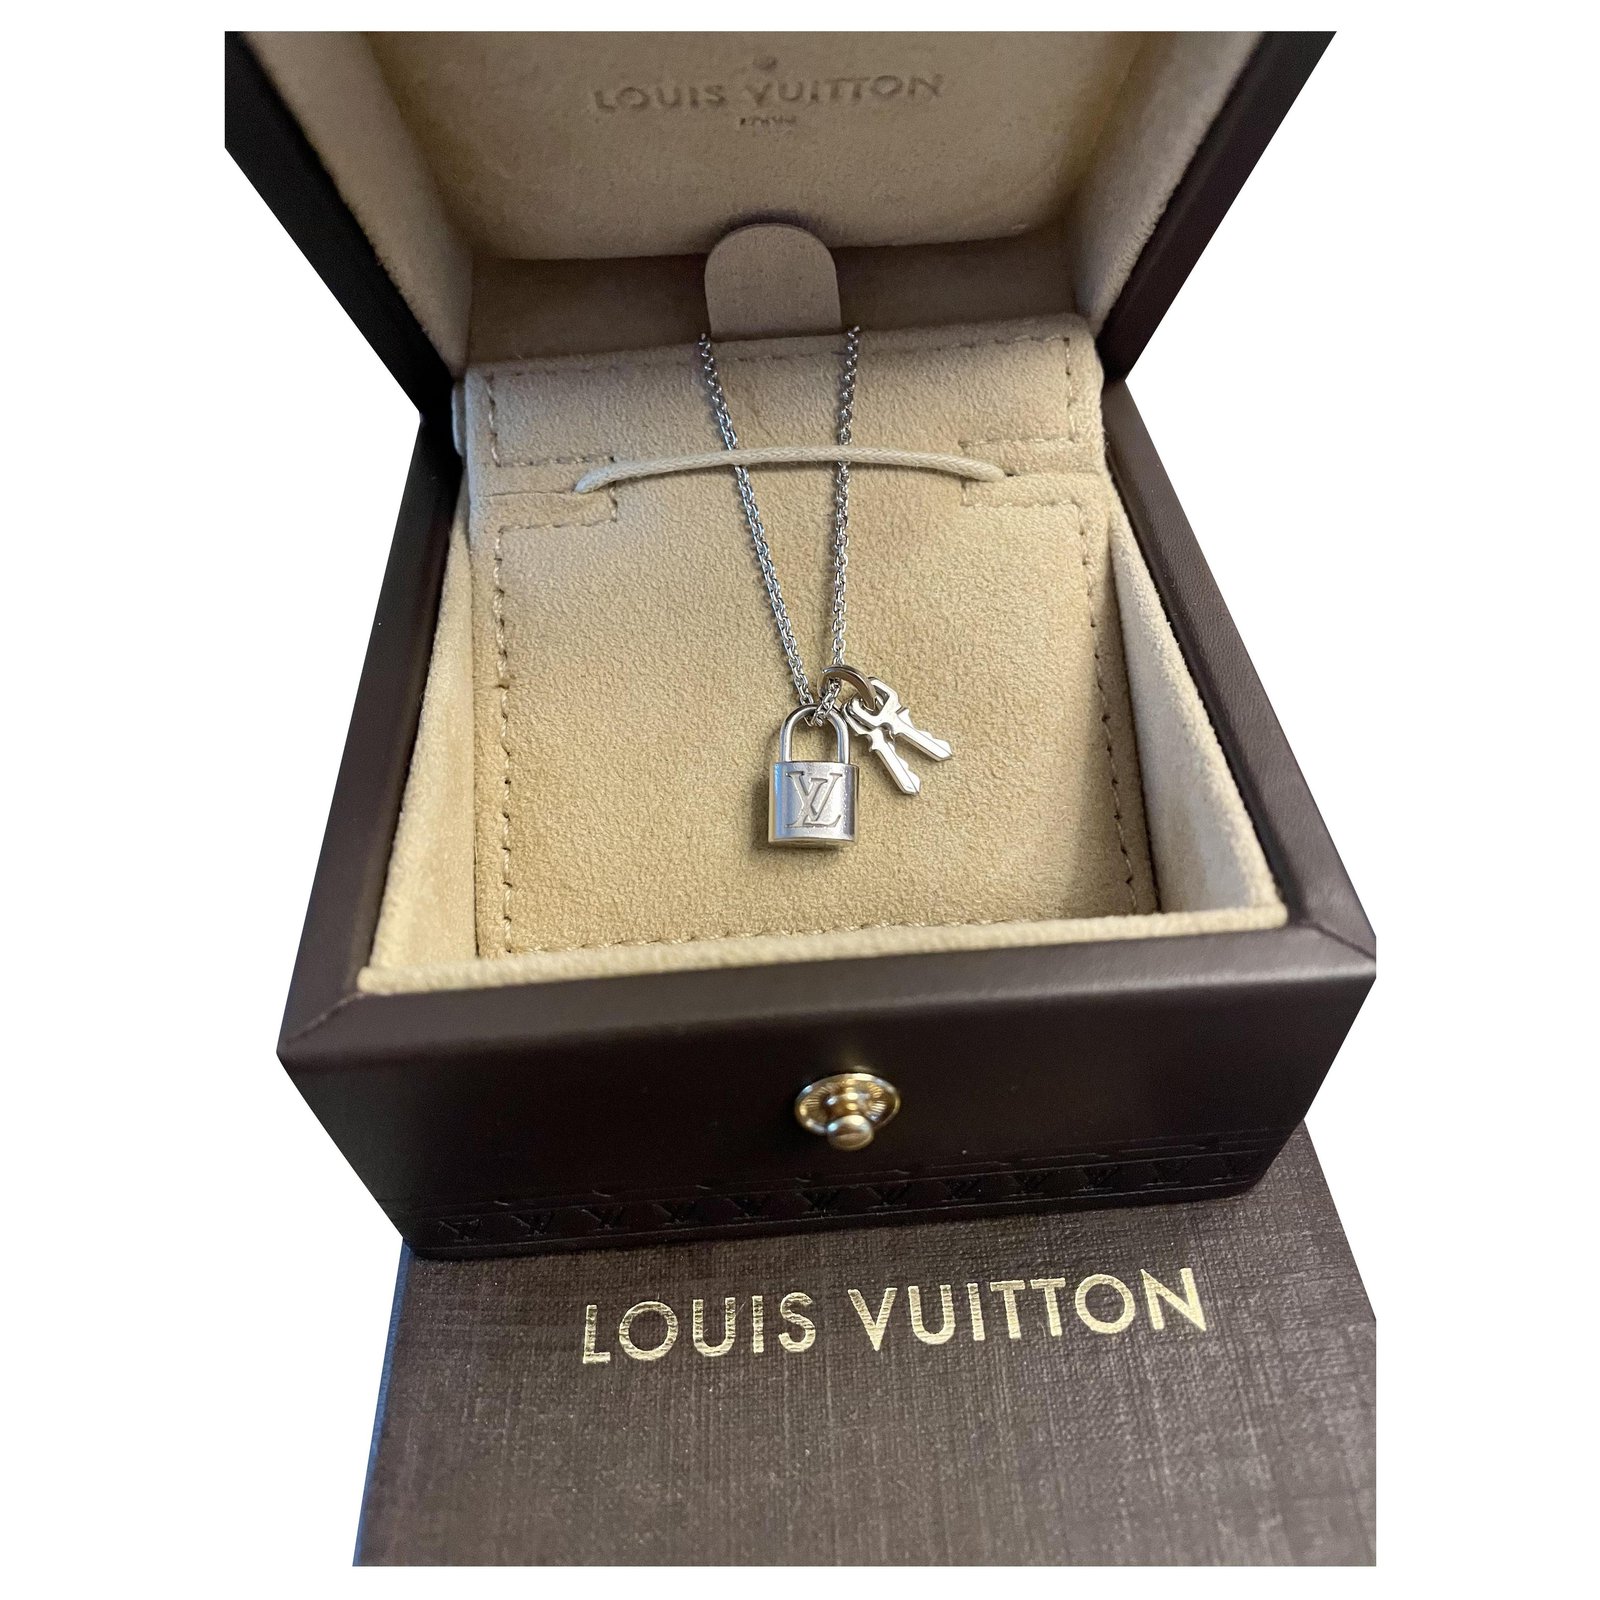 Collana con medaglioni di carta a tema Louis Vuitton